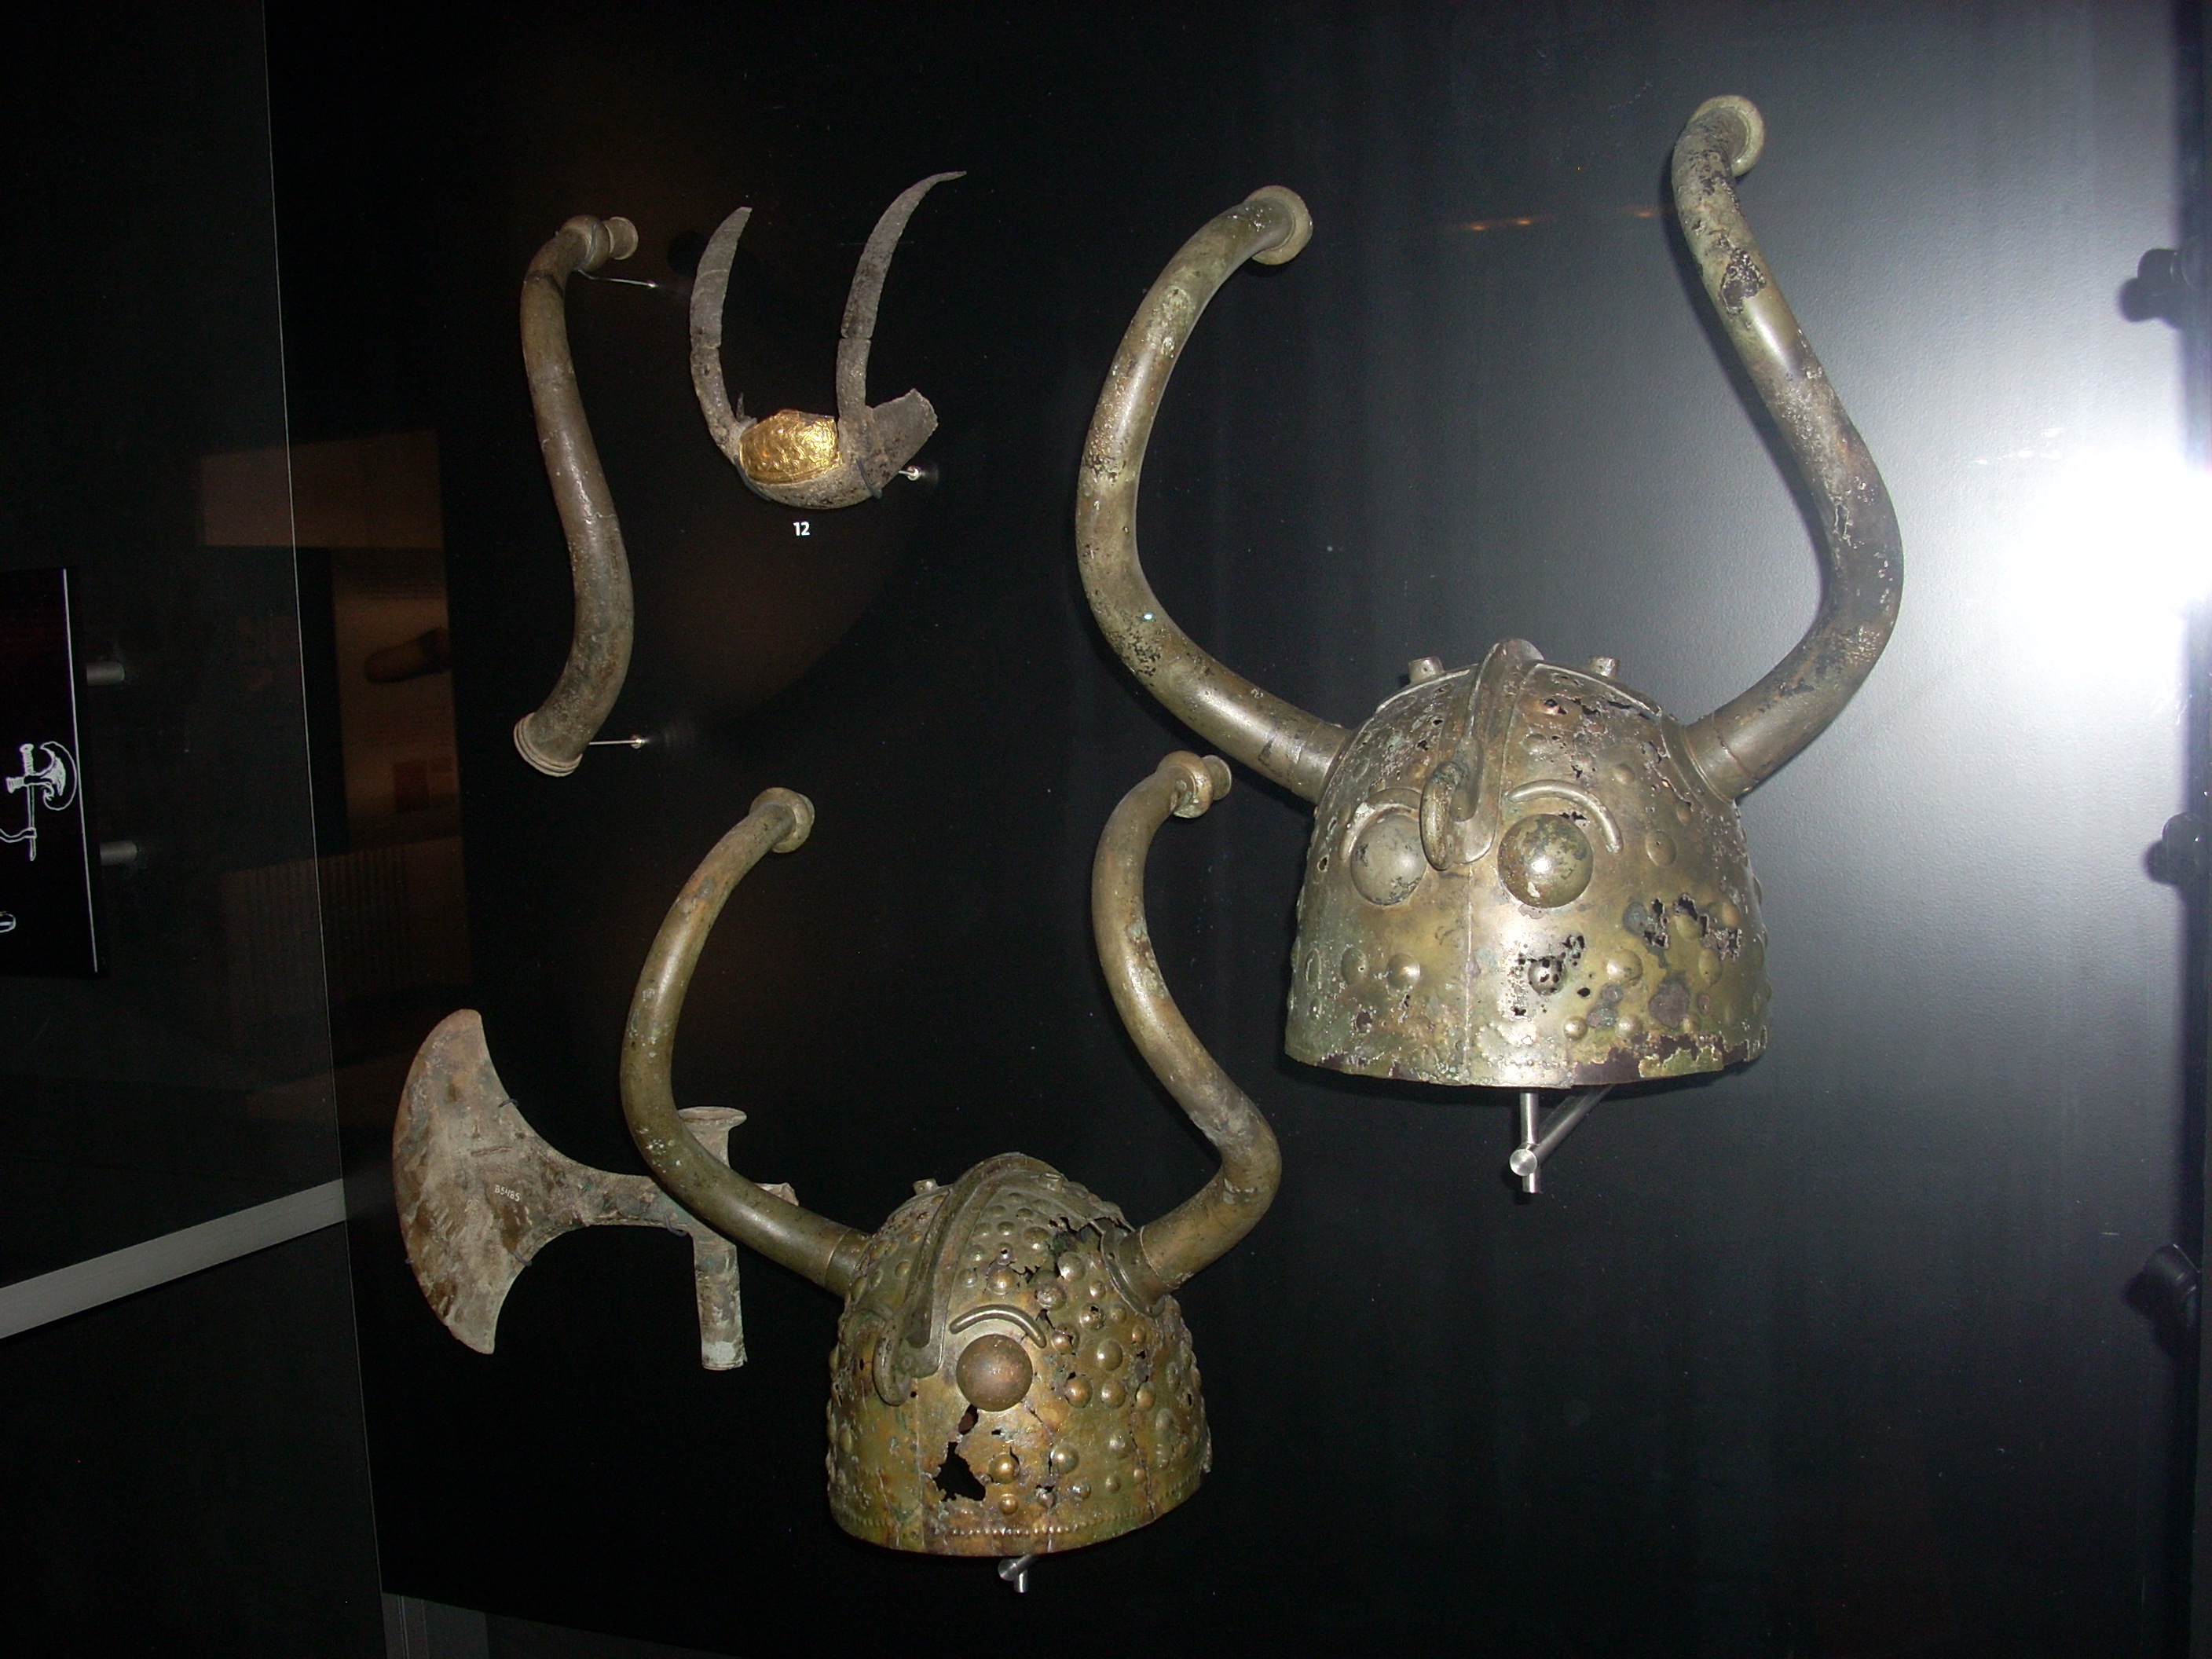 The Veksø helmets - bronze Age horned helmets from Brøns Mose at Veksø on Zealand, Denmark. Photo taken at the National Museum of Denmark, Copenhagen, on March 11, 2011.